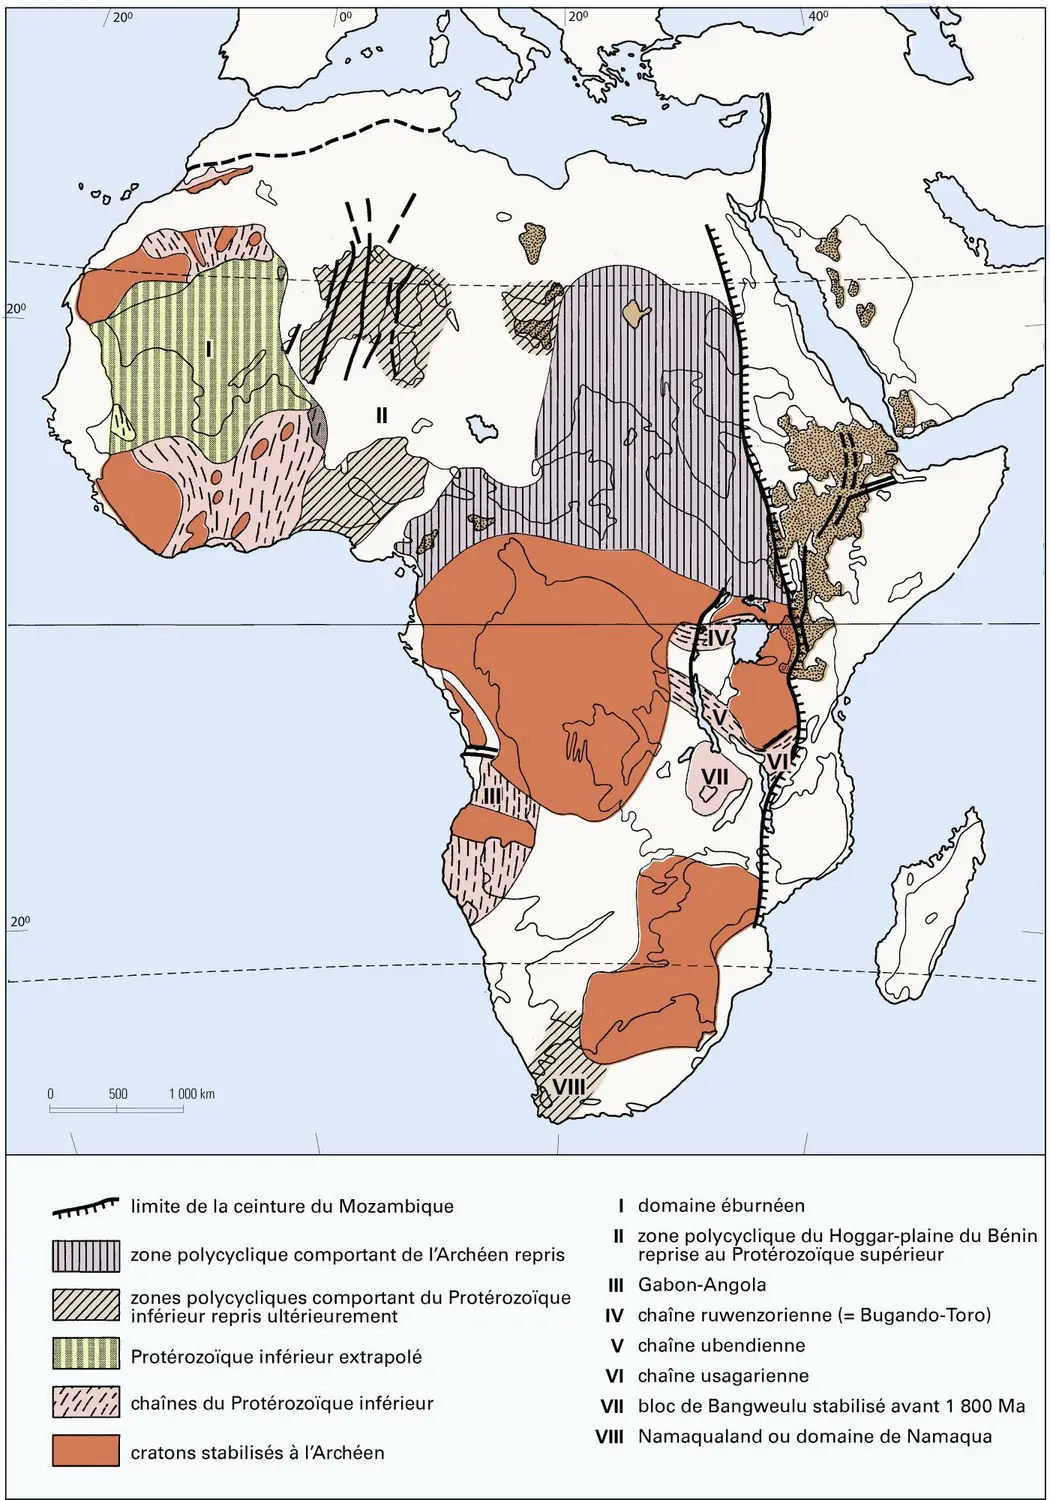 Protérozoïque inférieur de l'Afrique